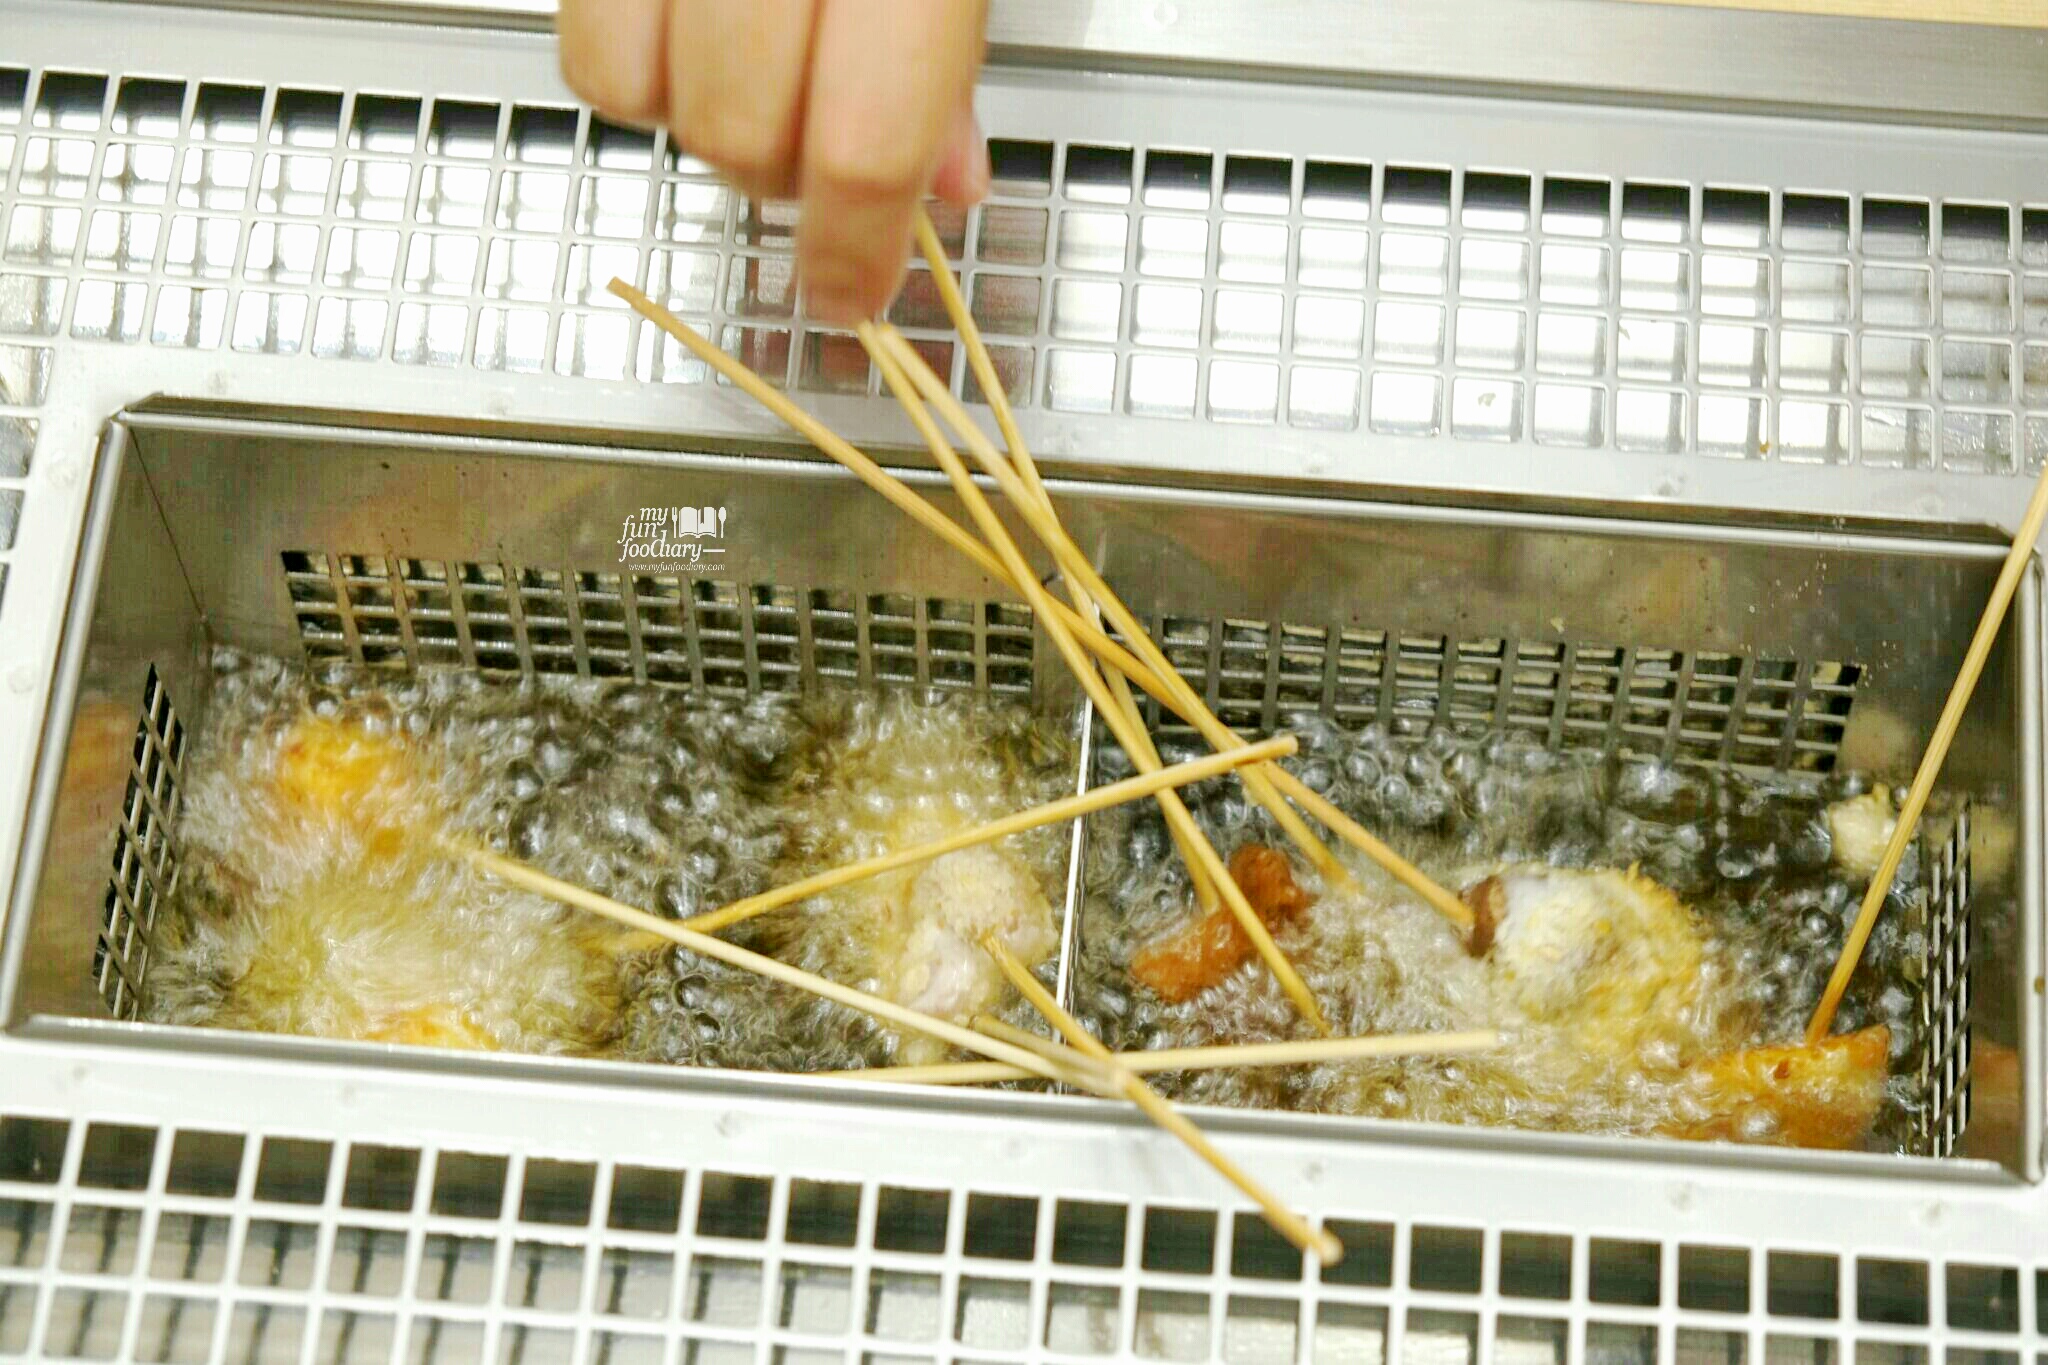 Cooking process at Kushiya Monogatari by Myfunfoodiary